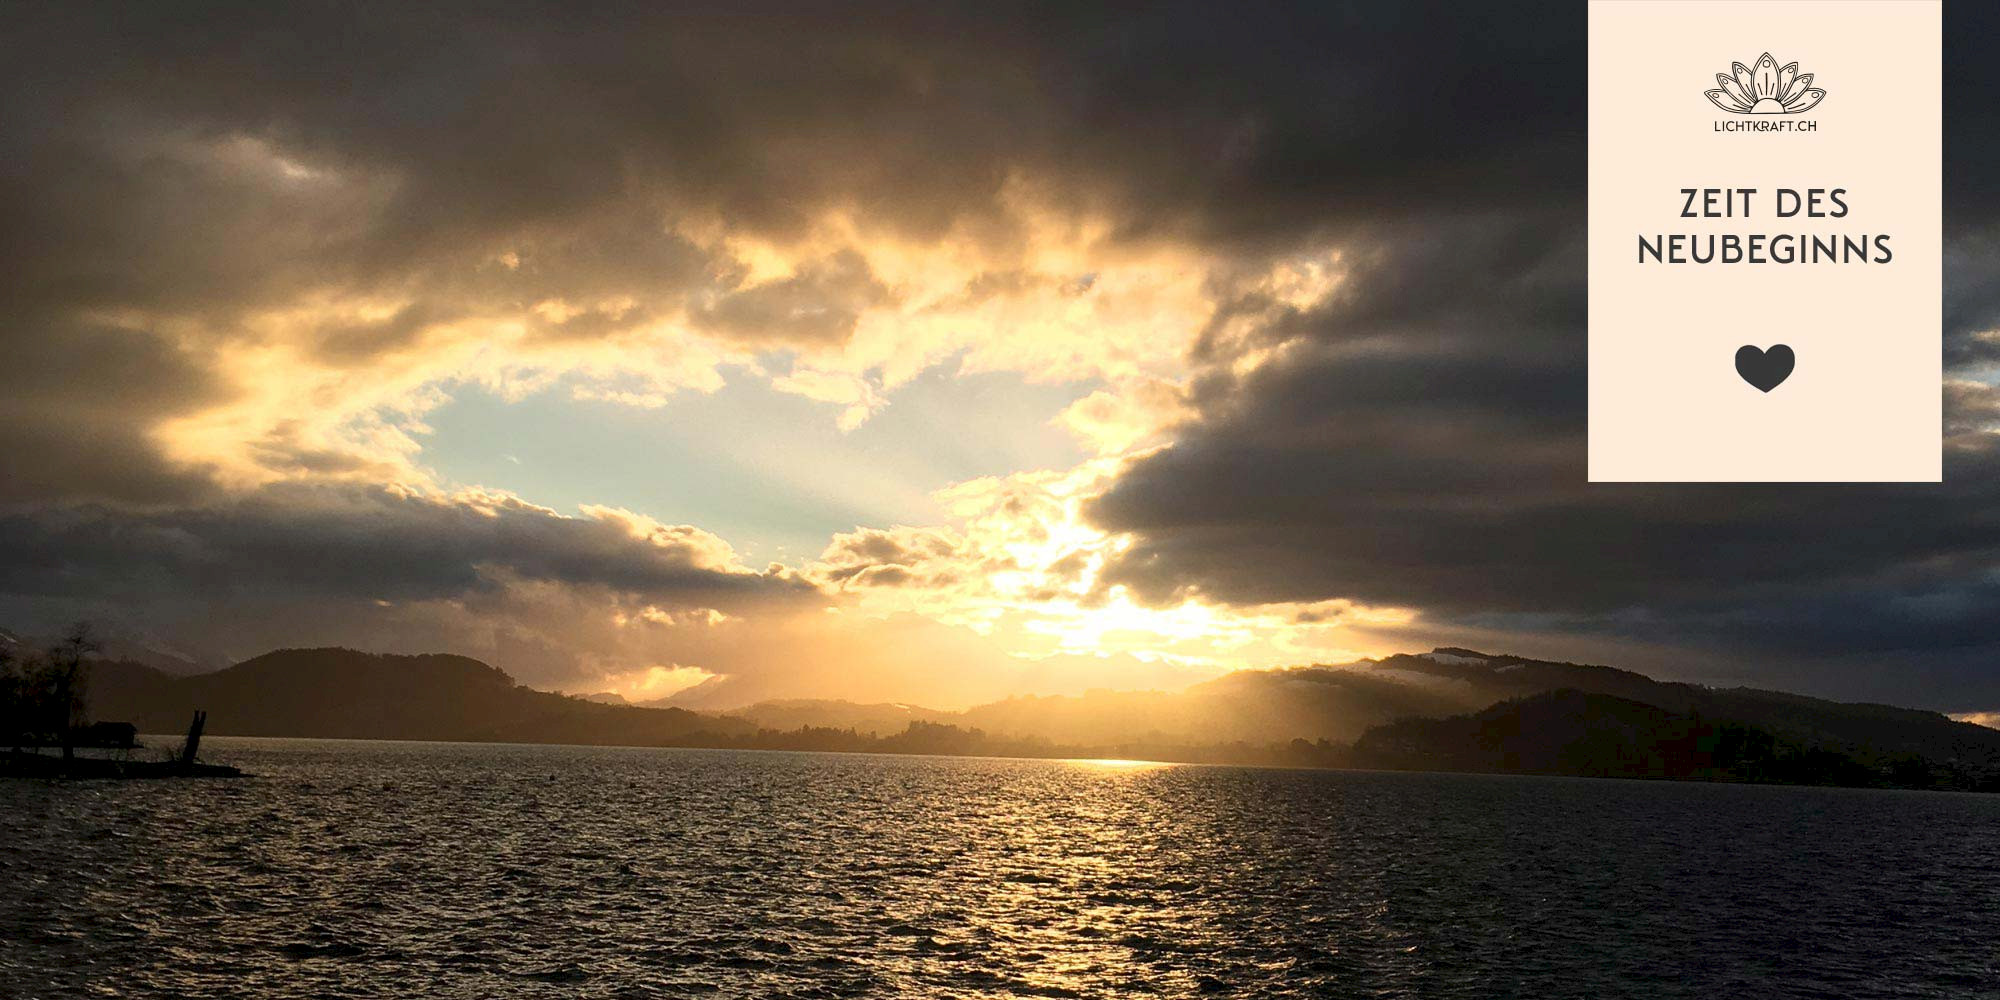 Sonne die hinter den Wolken hervor strahlt und über dem See reflektiert